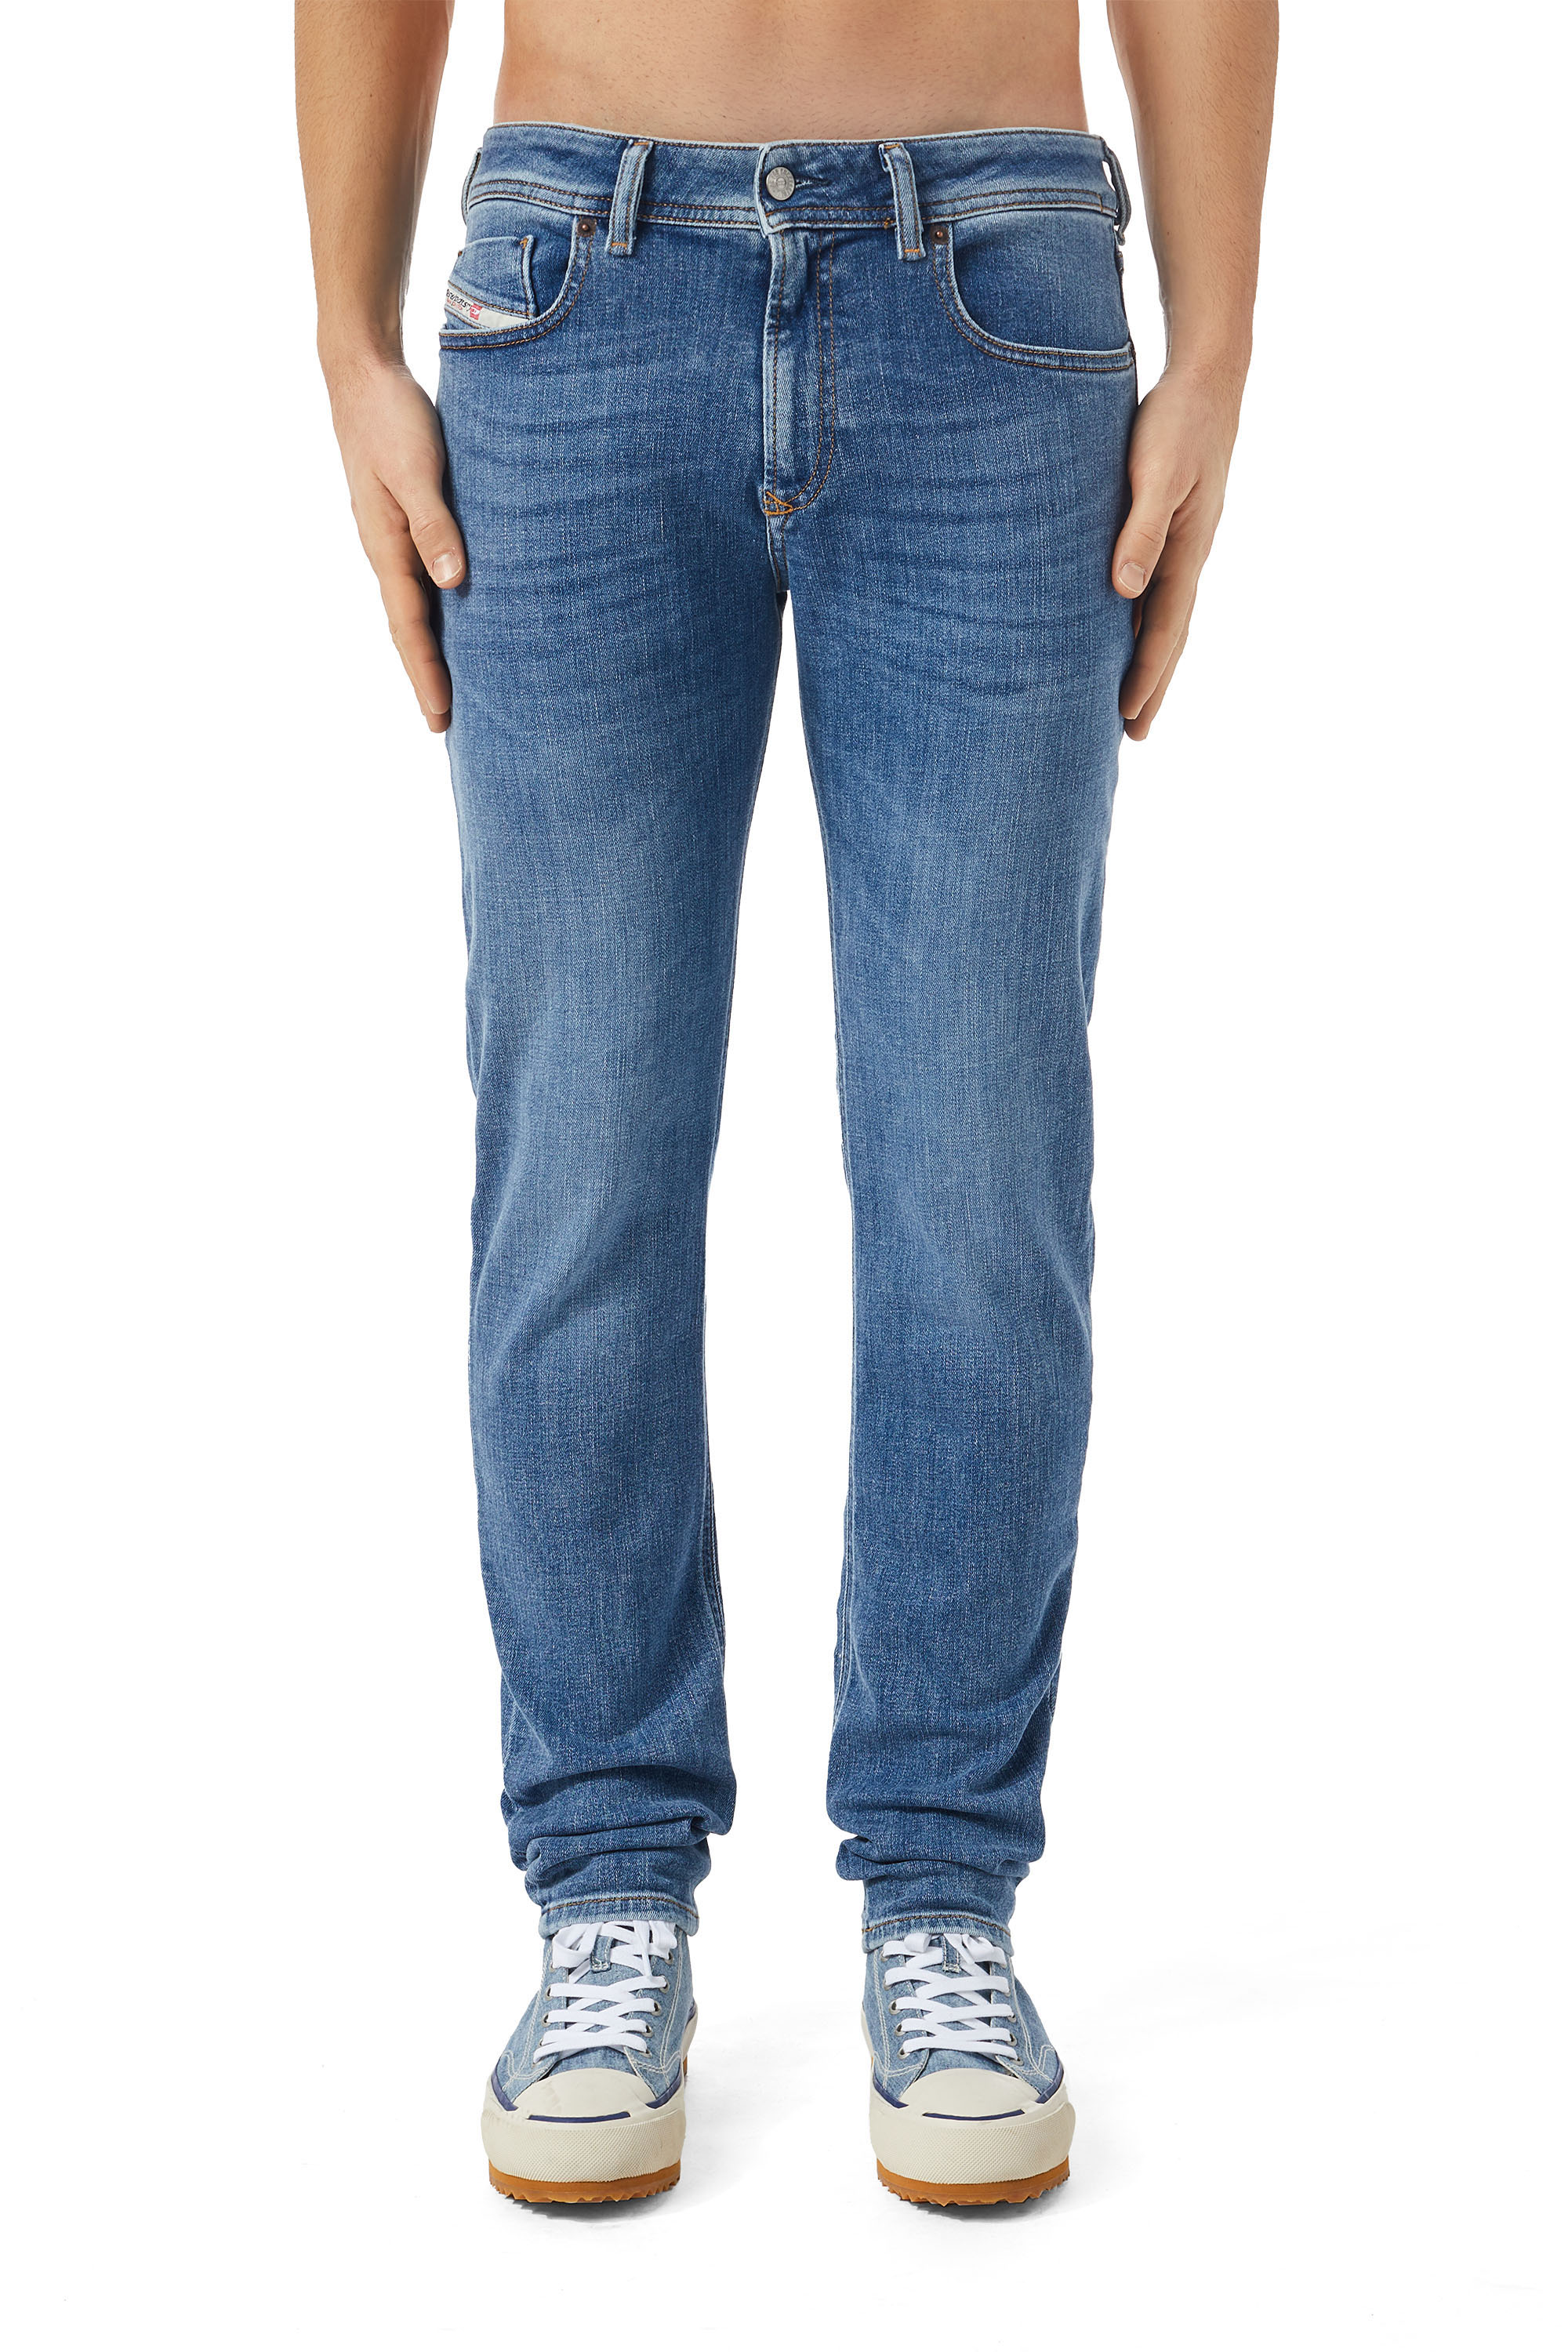 Diesel - Male Skinny Jeans 1979 Sleenker 09C01, Medium Blue - Image 2